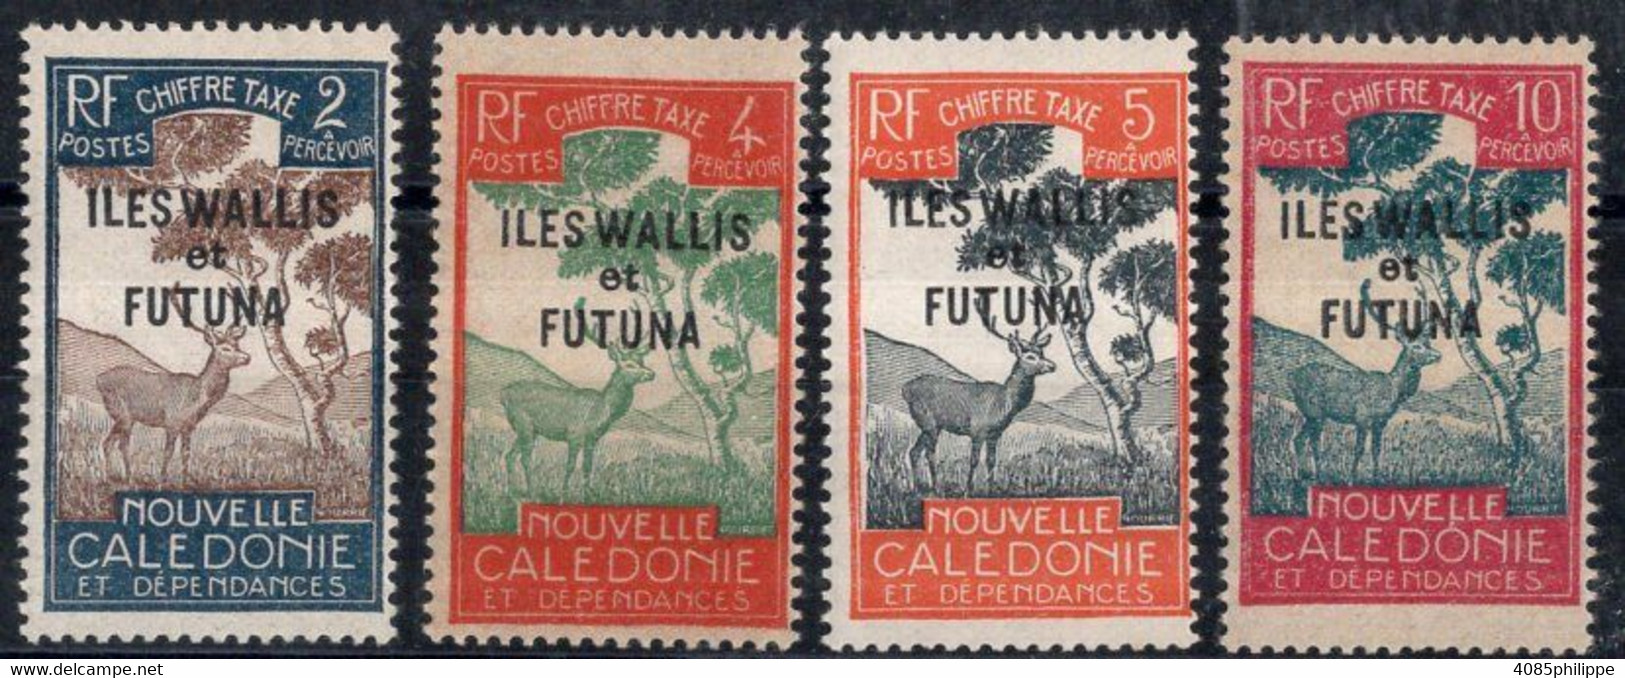 Wallis & Futuna Timbres-Taxe N°11 à 14** Neufs Sans Charnières TB Cote 3.50€ - Segnatasse